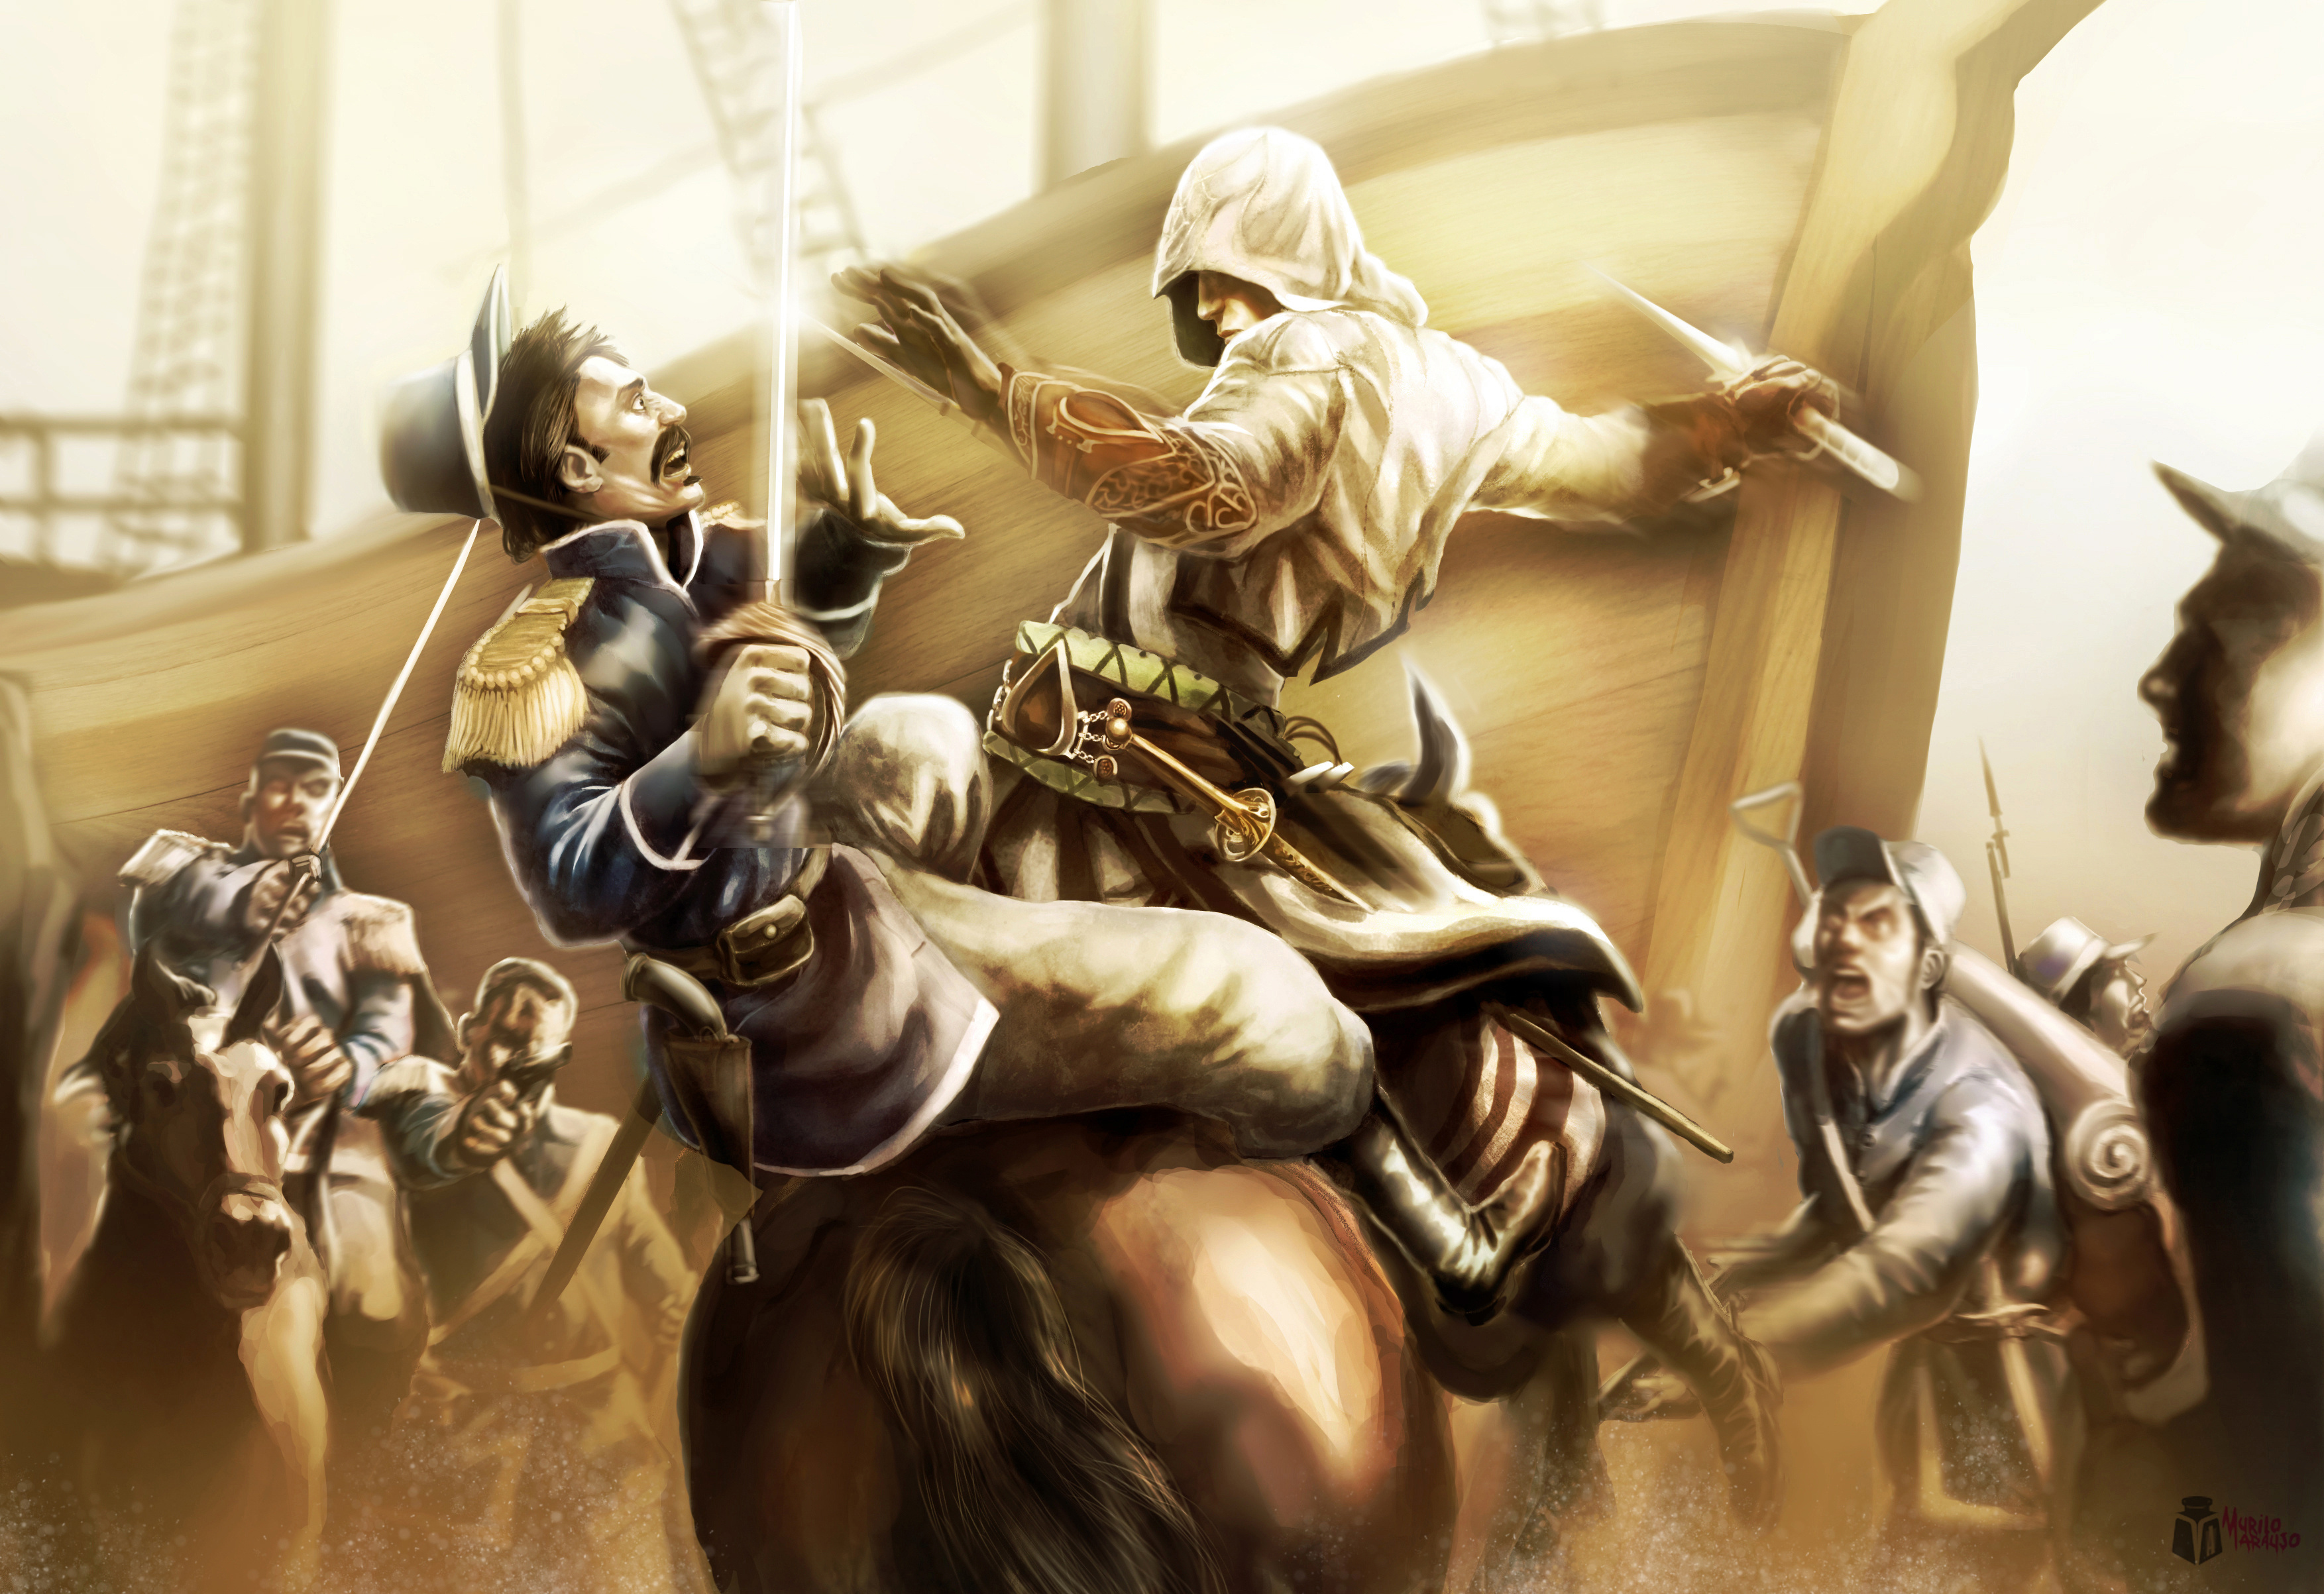 Descarga gratuita de fondo de pantalla para móvil de Assassins Creed Iii, Cuchillo, Soldado, Muerte, Assassin's Creed, Guerrero, Espada, Arma, Videojuego.